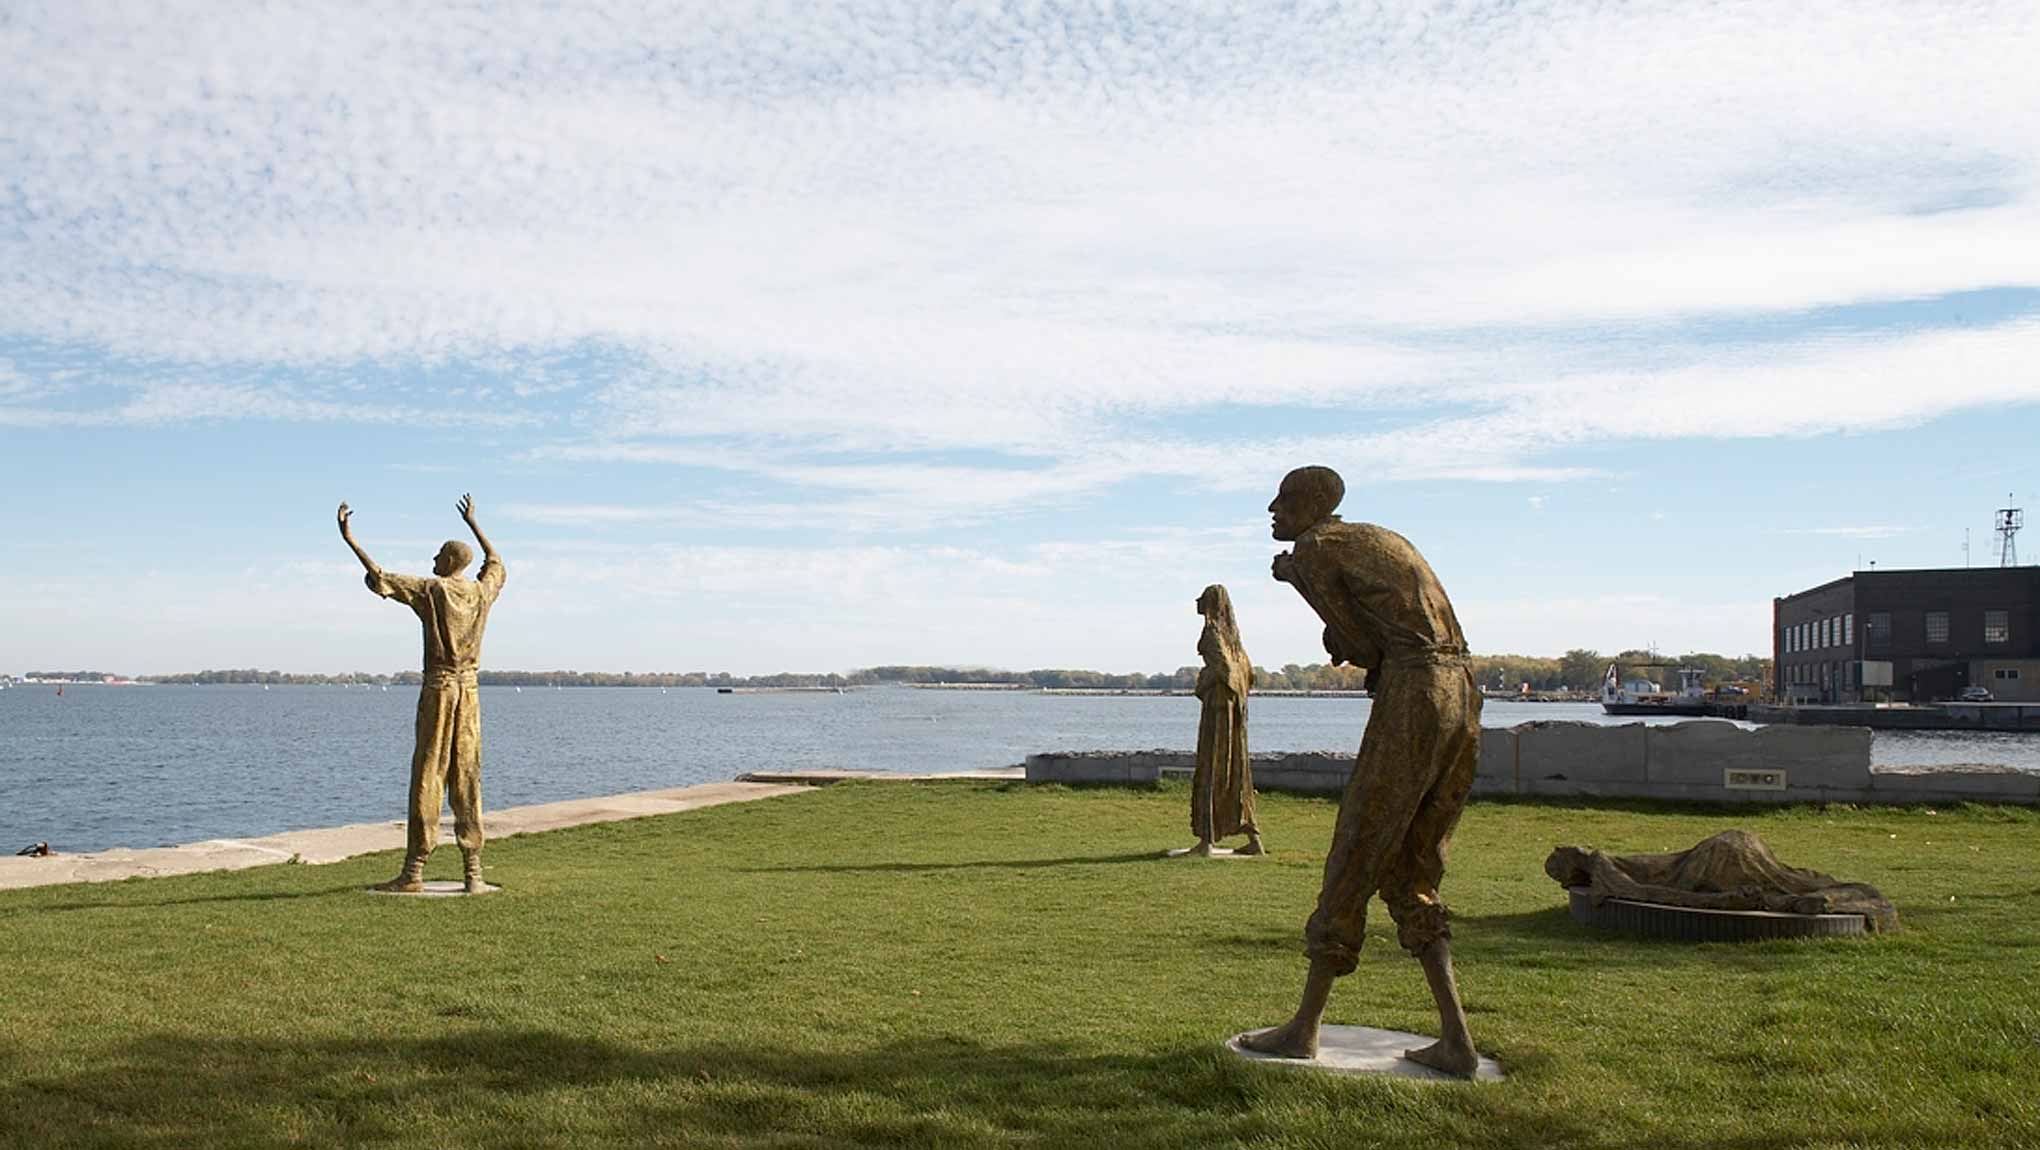 Quatre statues de bronze érigées sur une étendue de gazon près de la rive. Elles font toutes face au lac et il y a une certaine distance entre chacune. Une statue a les bras levés au ciel, une autre a le dos voûté, la dernière est étendue au sol.